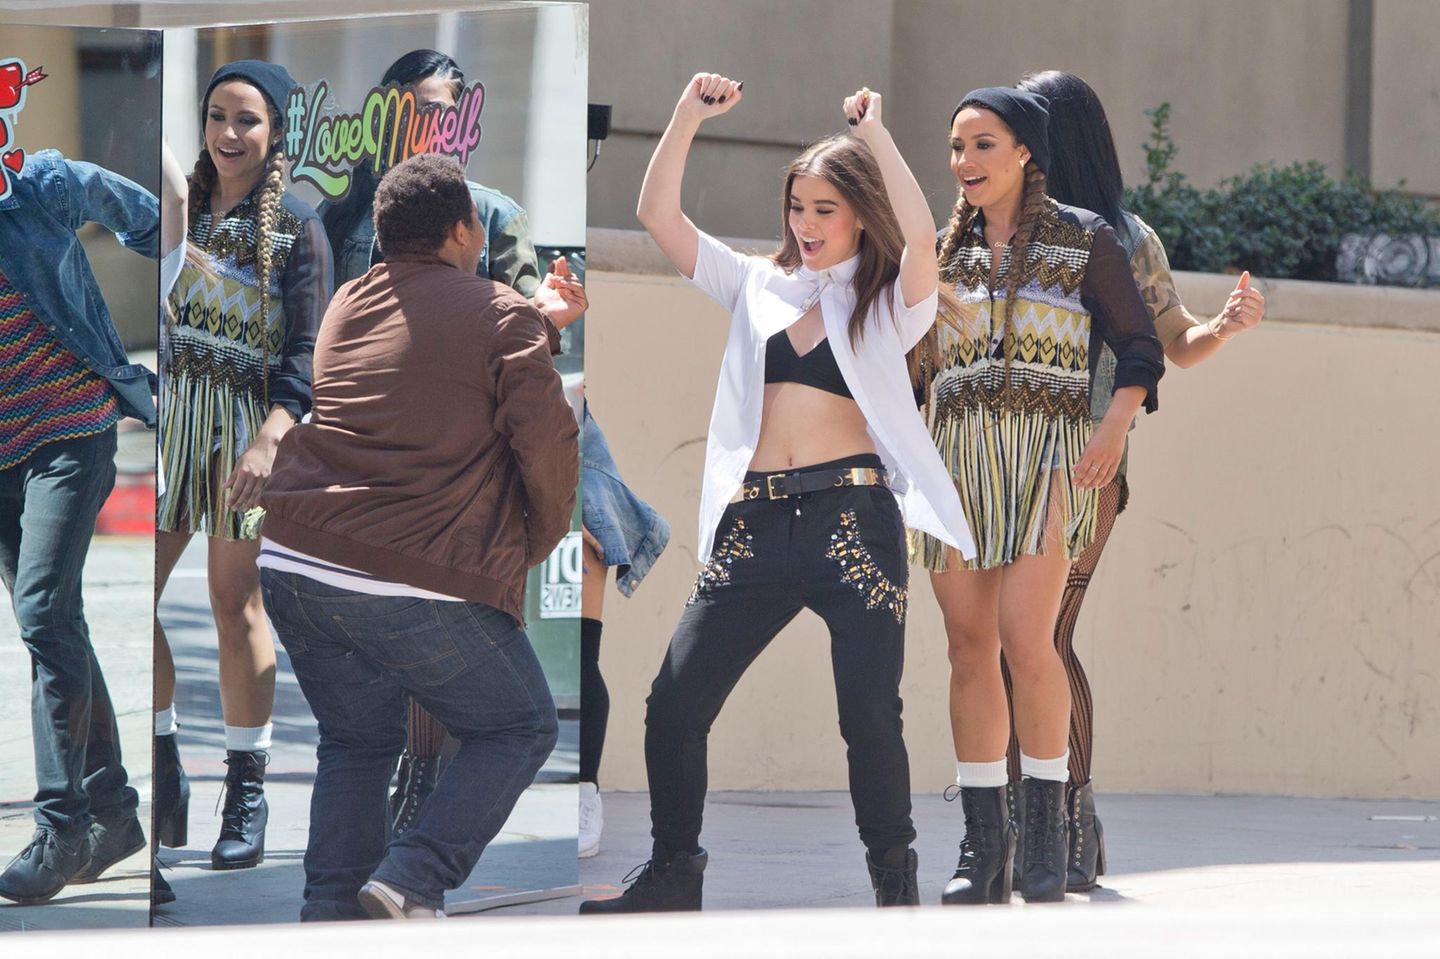 22. Juli 2015: Hailee Steinfeld tanzt für das Video ihres ersten Liedes "Love Myself" vor einem Spiegel in Downtown Los Angeles.